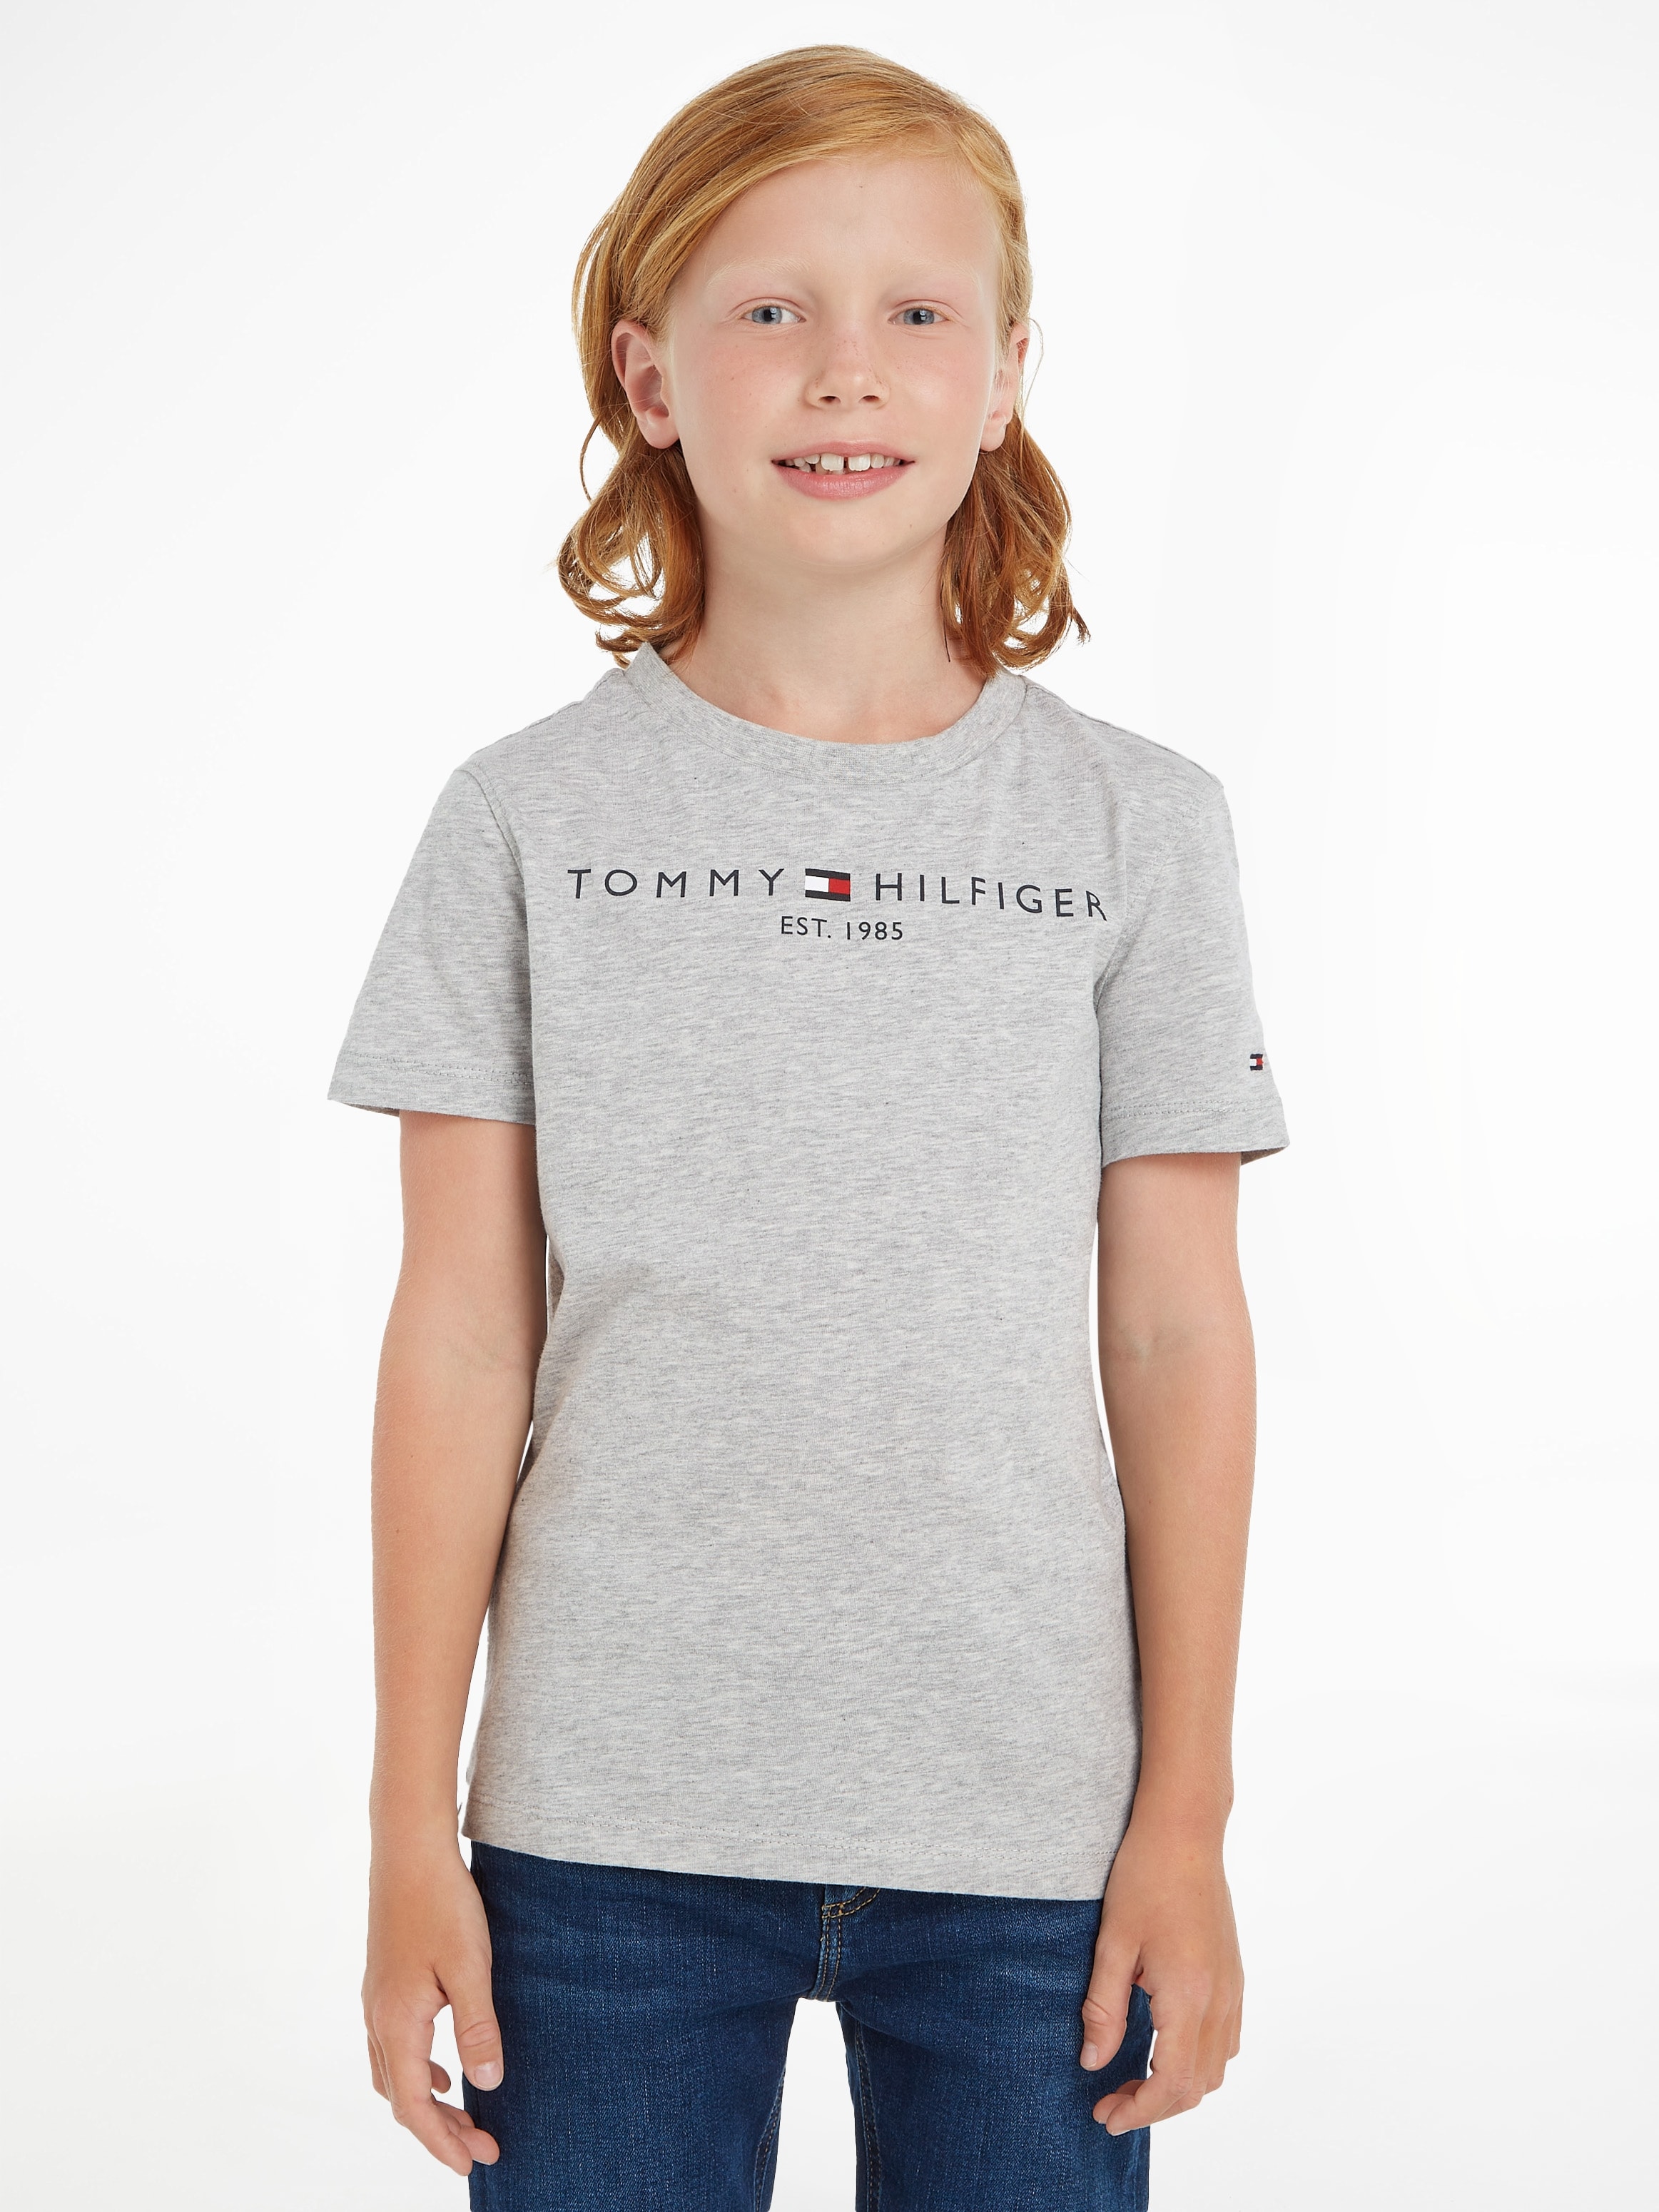 Tommy Hilfiger T-Shirt TEE«, Junior Mädchen OTTO und bestellen Kids »ESSENTIAL bei Jungen MiniMe,für Kinder